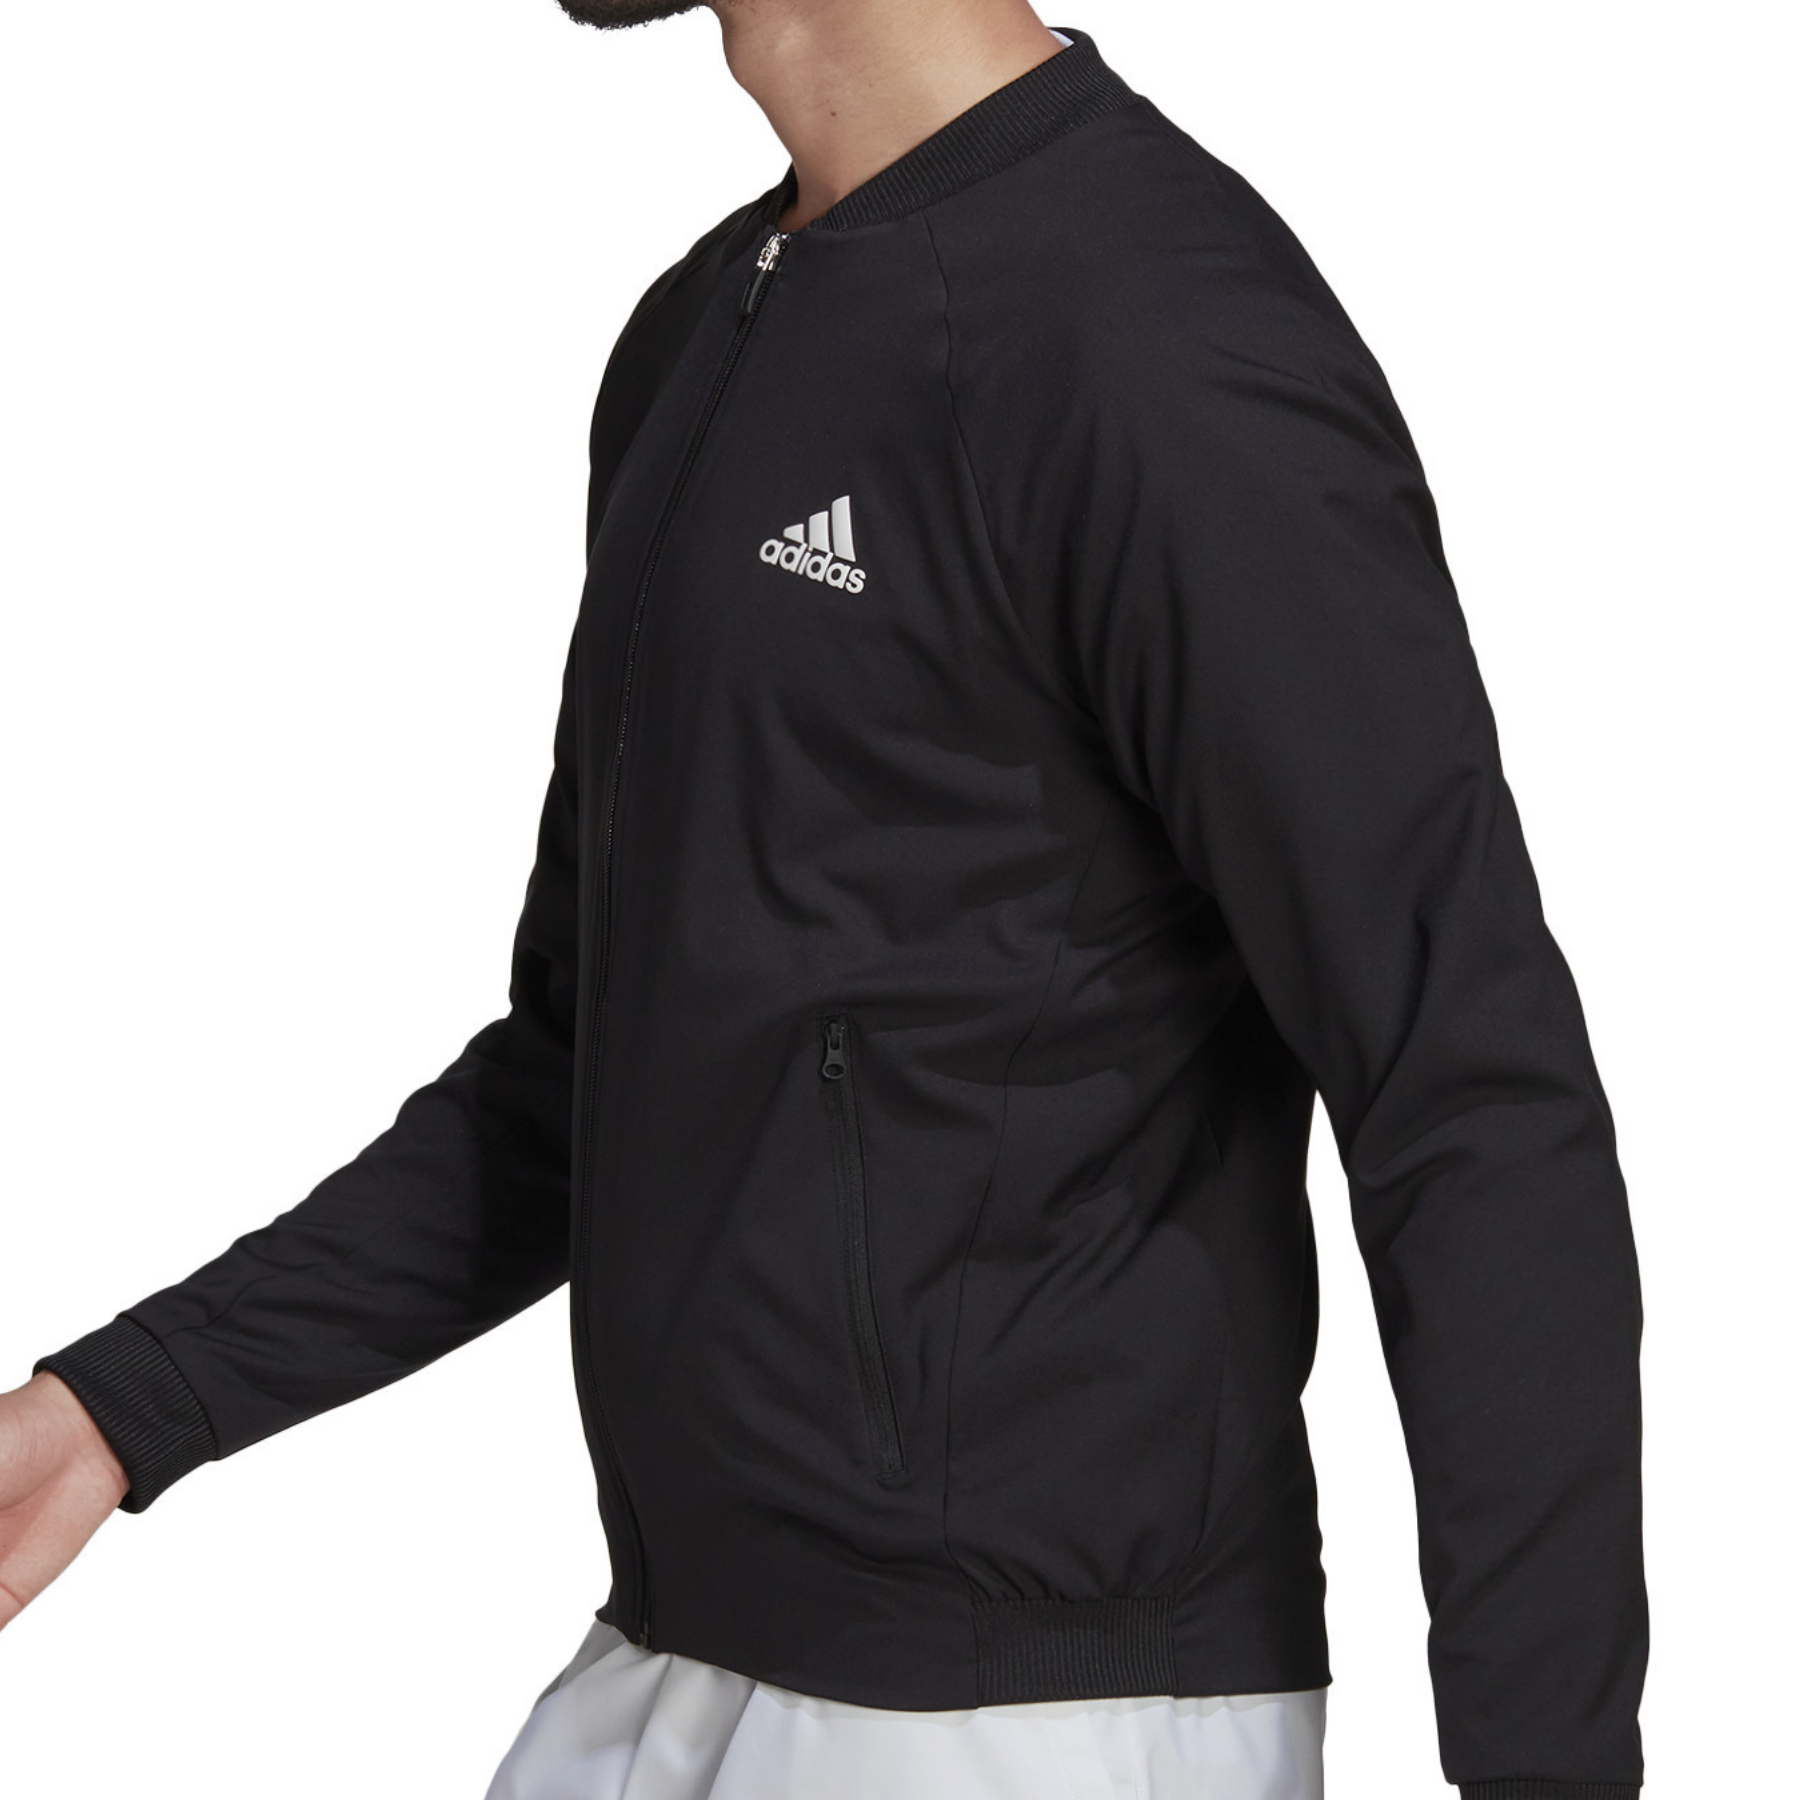 Inconsciente También tenedor Adidas Tennis Jacket - Black/White – TennisGear